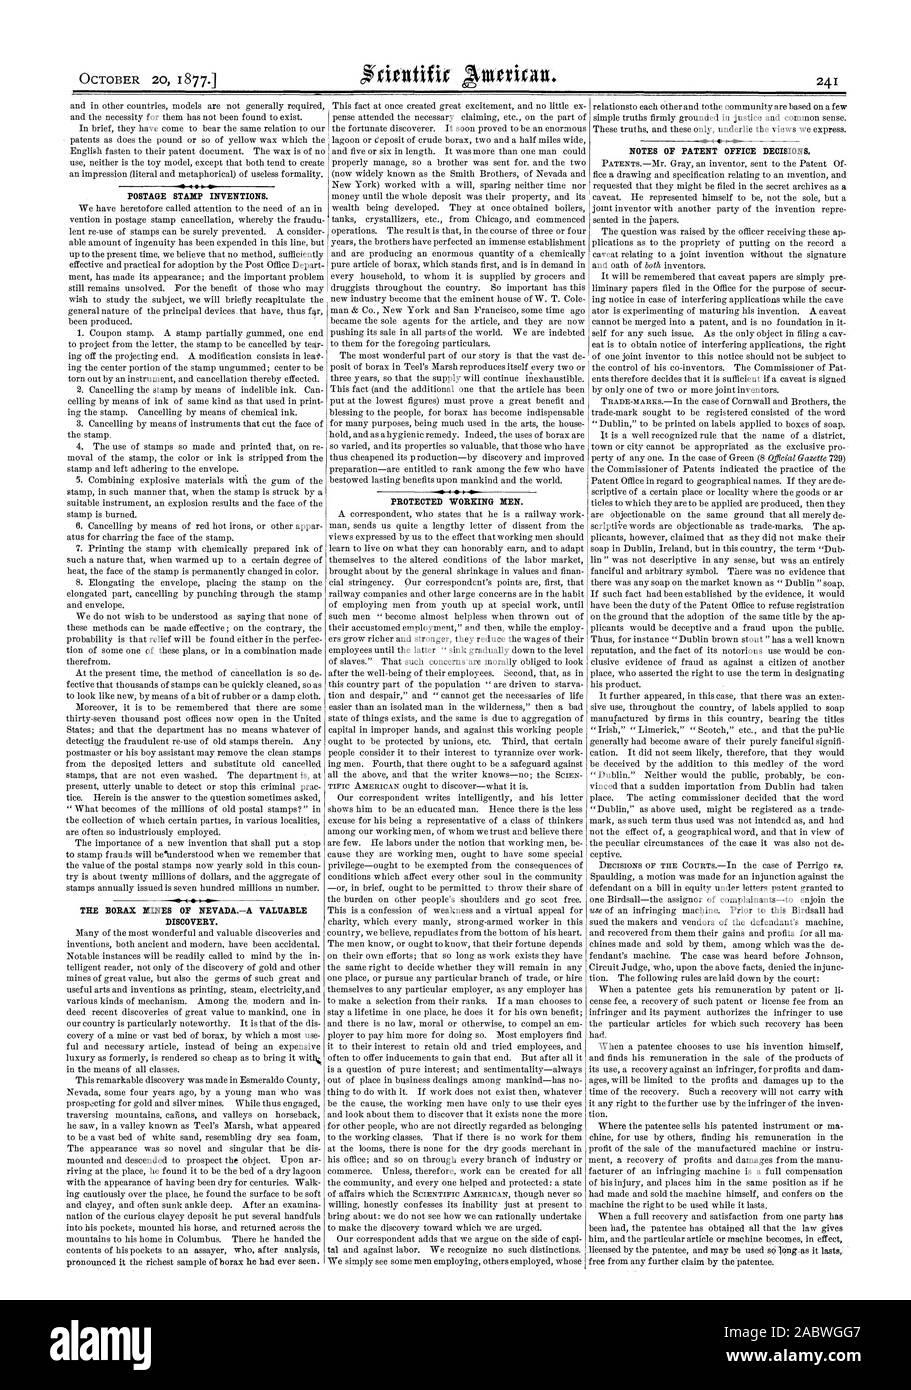 Briefmarke Erfindungen. Die borax Minen von NEVADAA wertvolle Entdeckung. Geschützt arbeiten Männer. Noten von PATENTAMT ENTSCHEIDUNGEN., Scientific American, 1877-10-20 Stockfoto